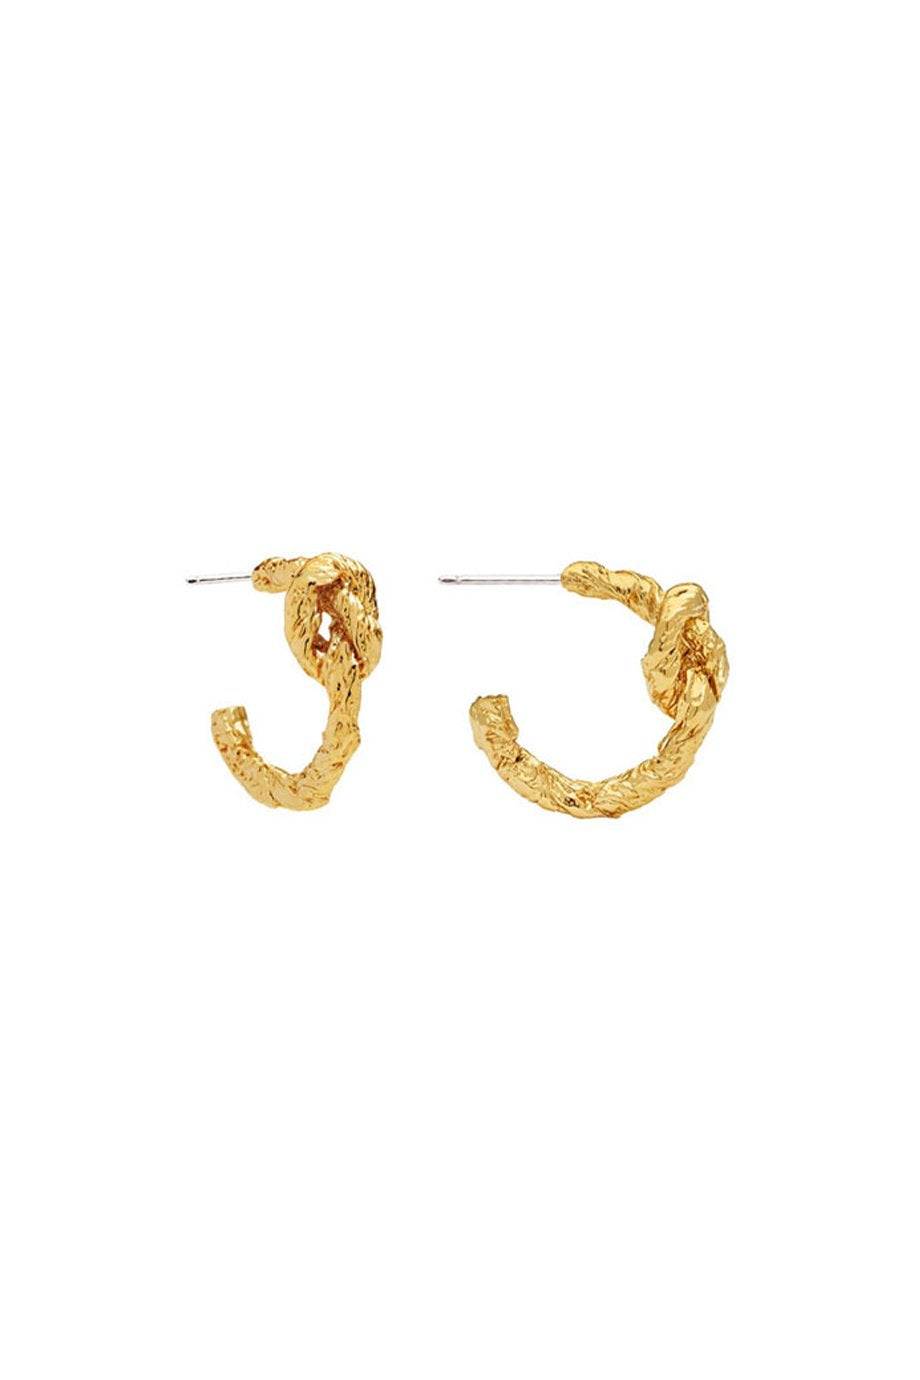 Amber Sceats Zion Earrings - Gold